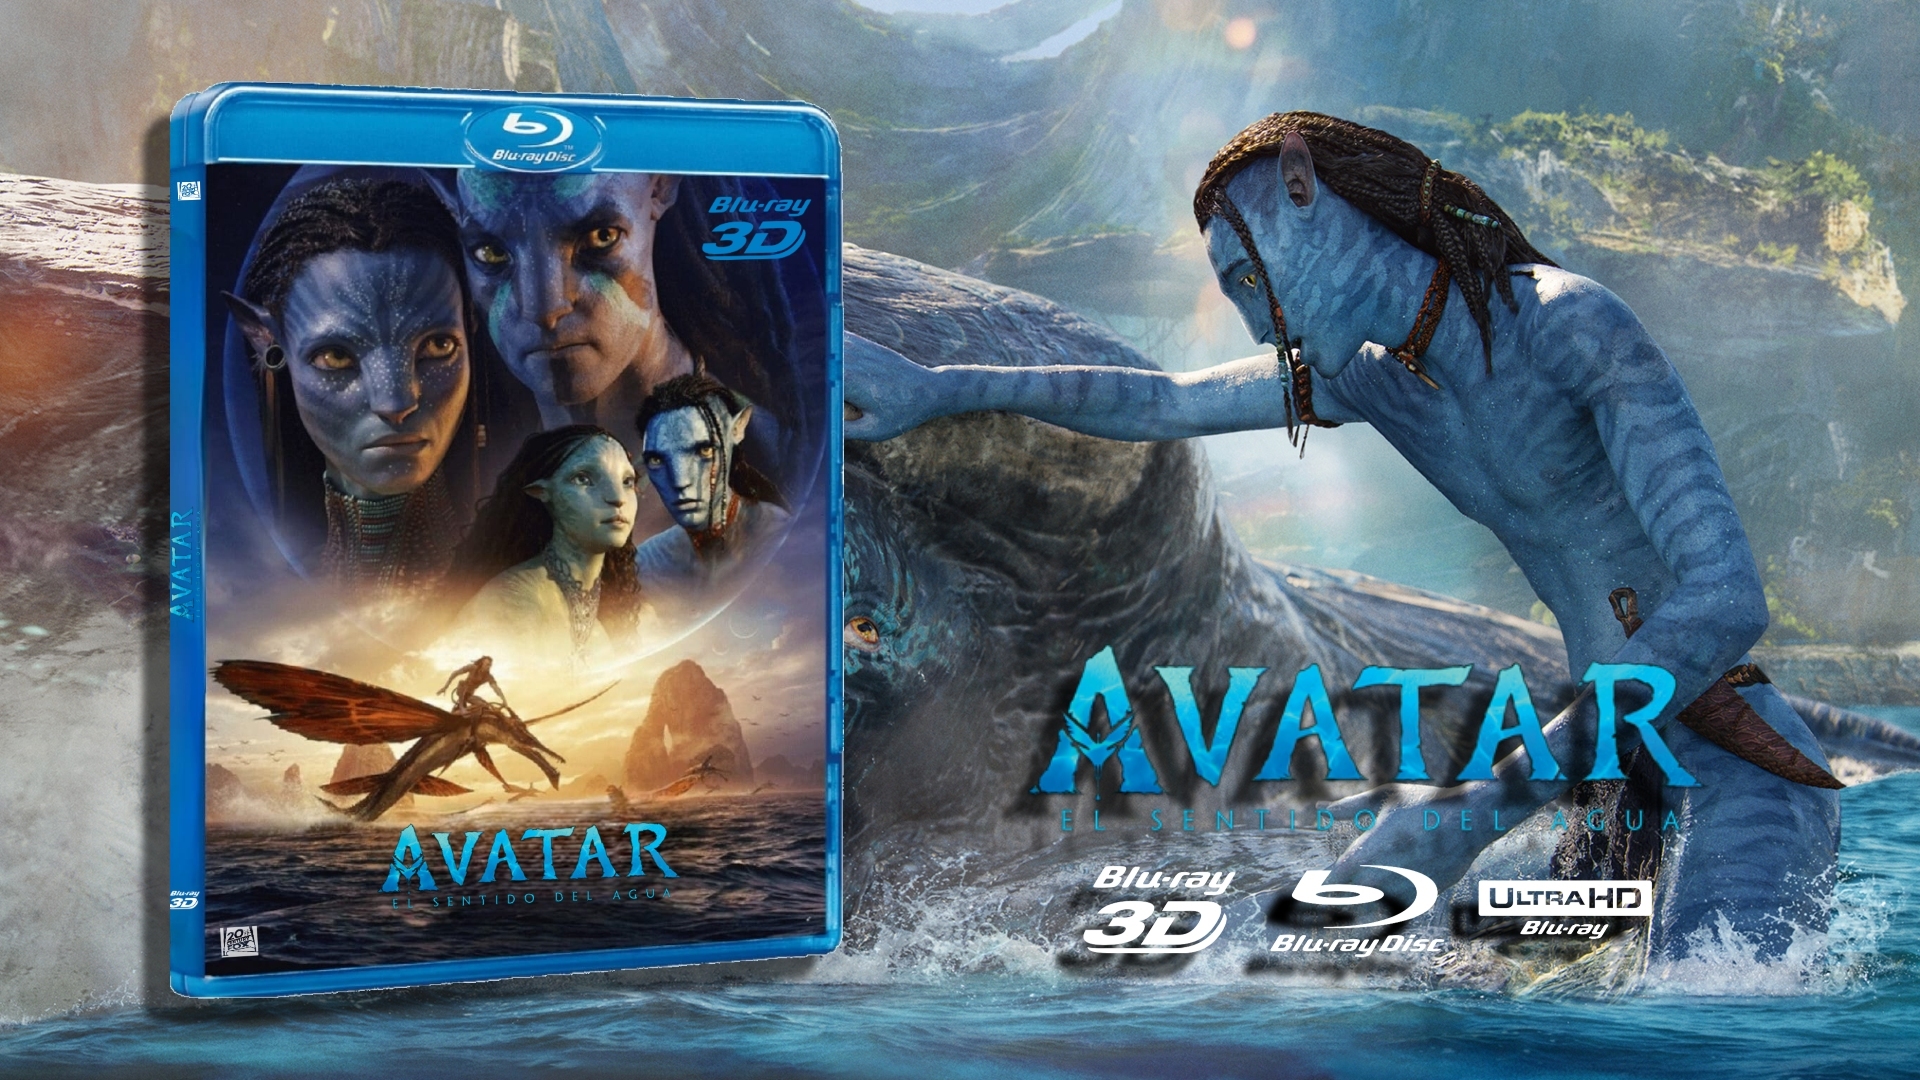 Avatar El Sentido del Agua en Blu-Ray 3D.